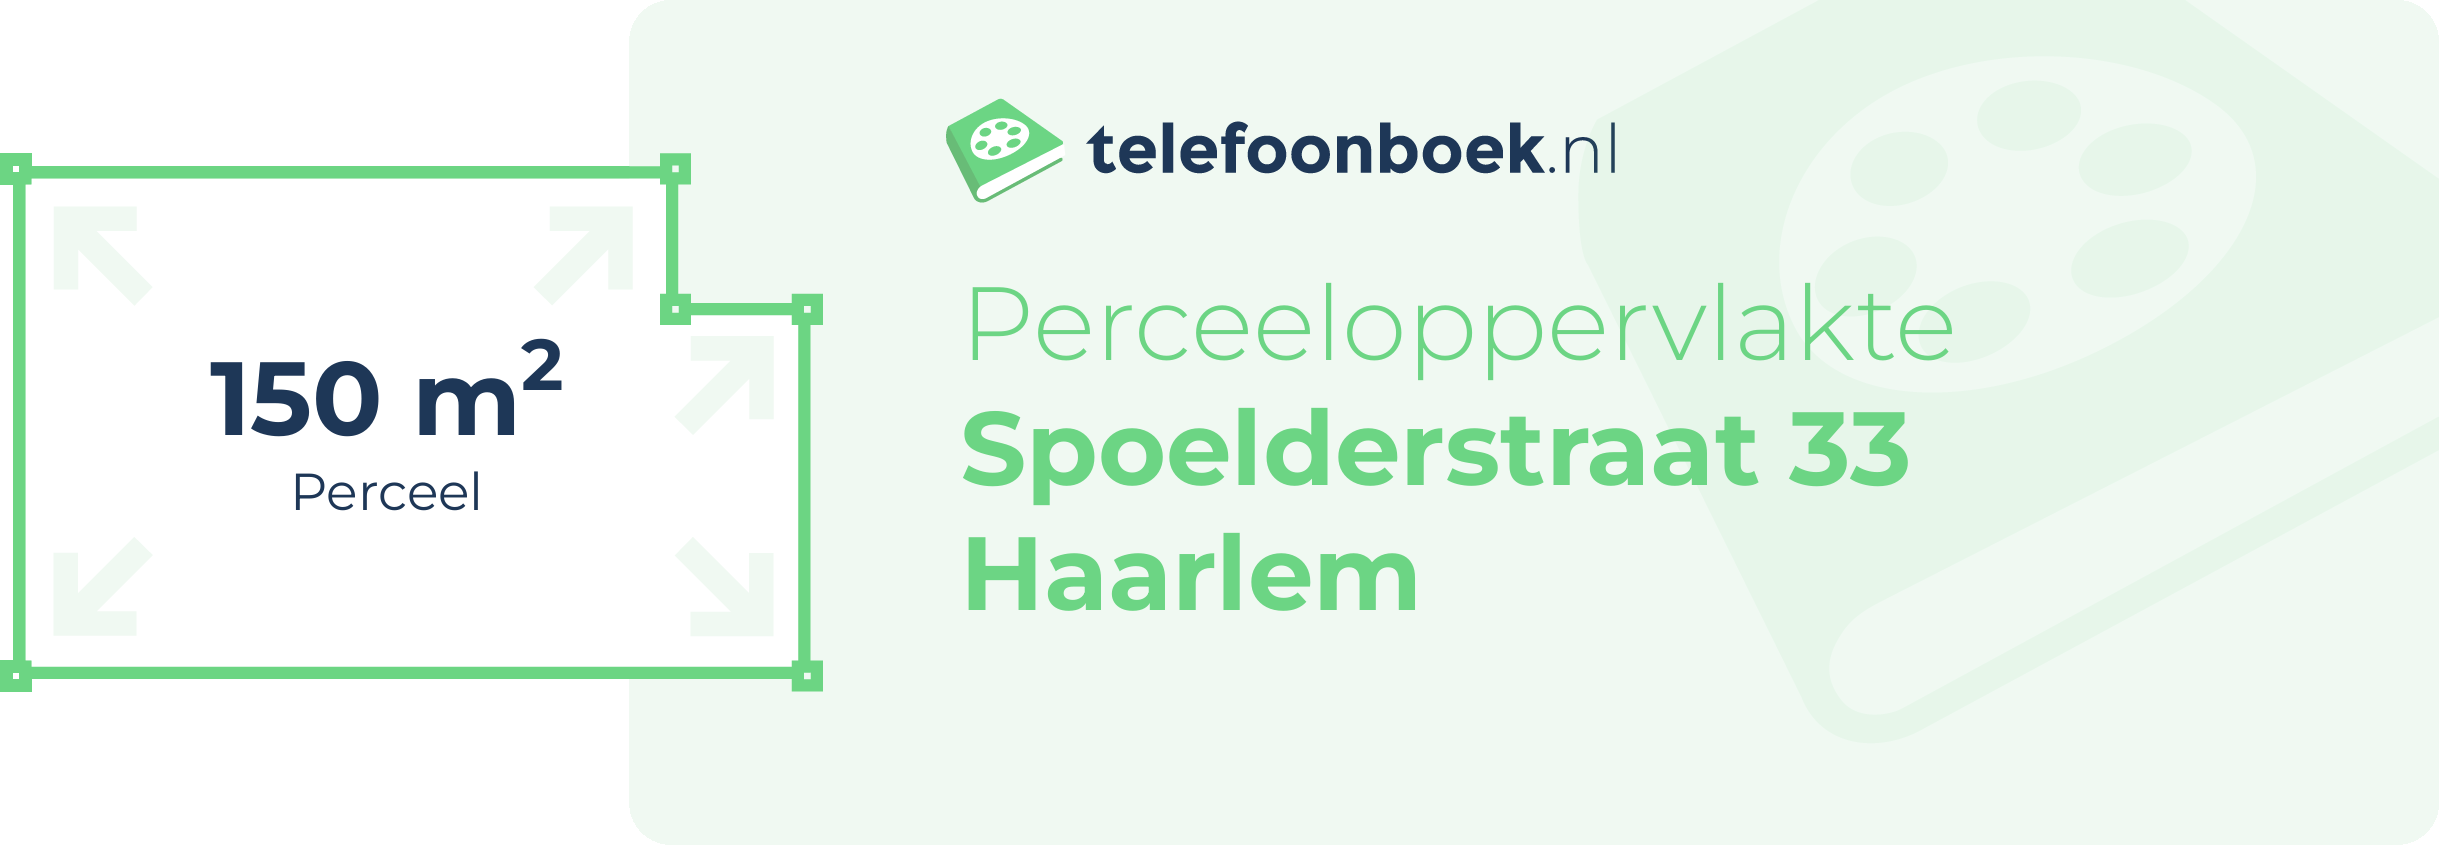 Perceeloppervlakte Spoelderstraat 33 Haarlem